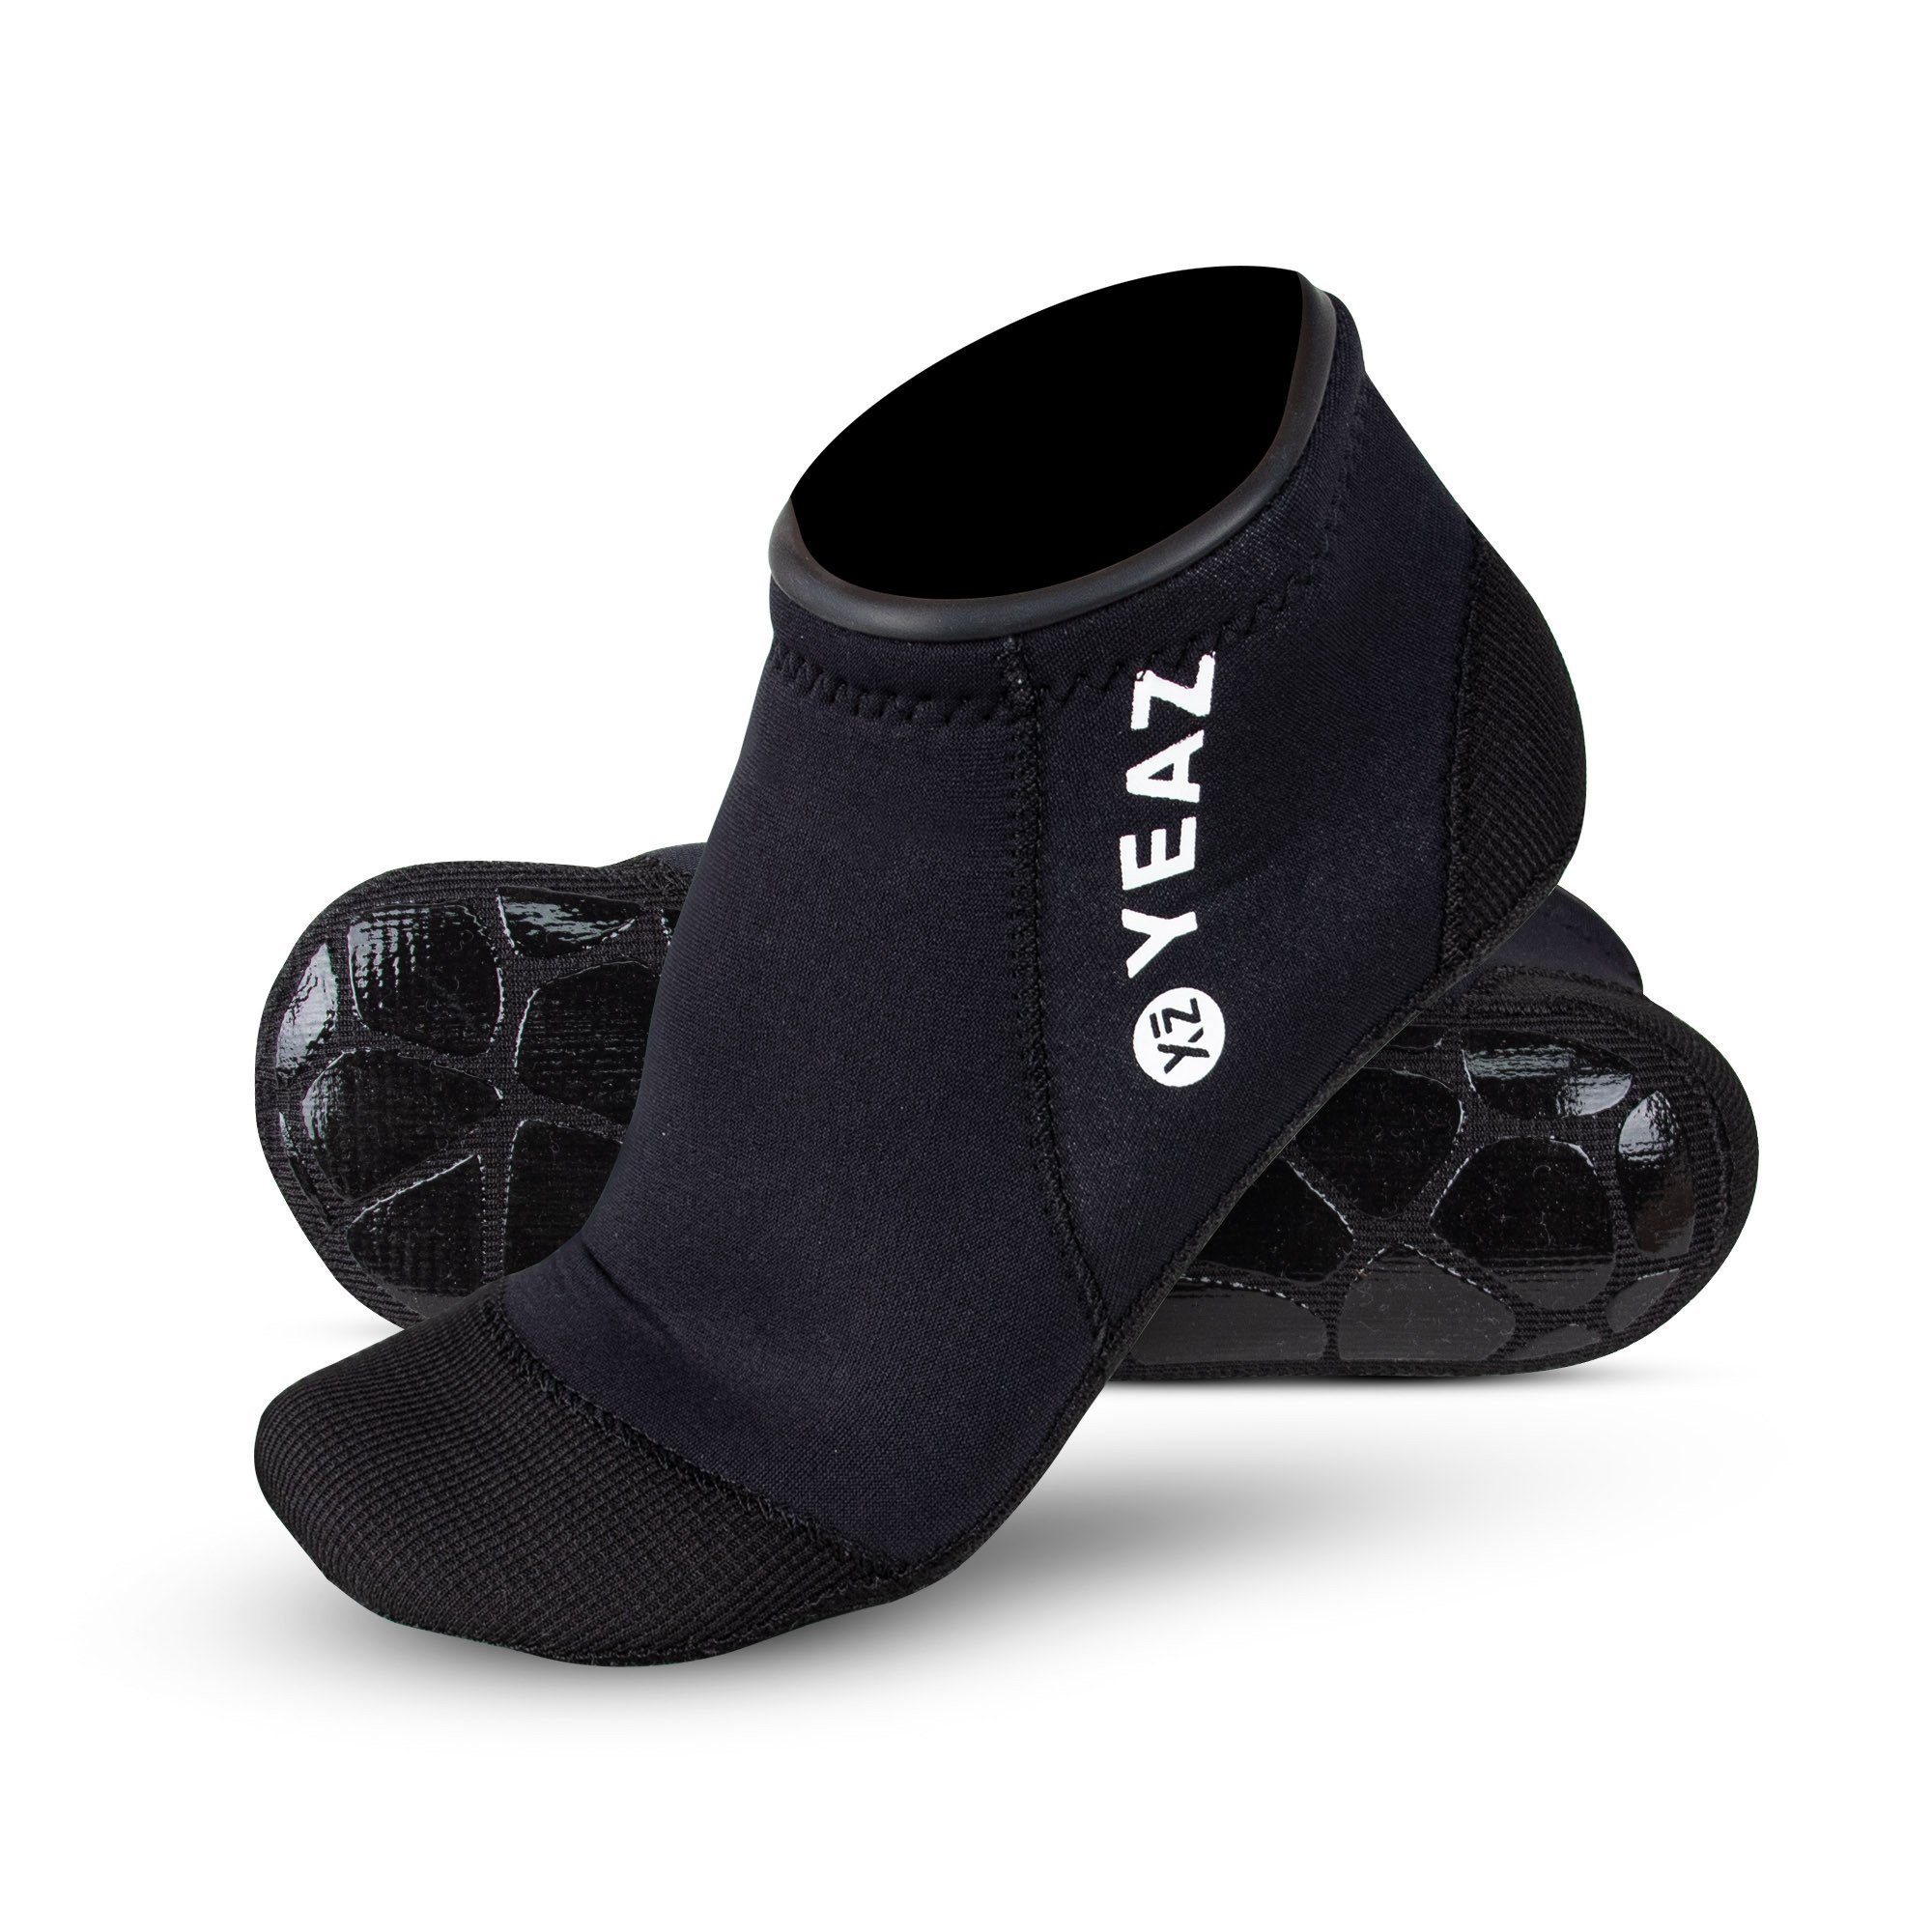 YEAZ Неопренові шкарпетки NEOSOCK LOW PRO neoprensocken Ideal für Wassersport / Outdoor-Aktivitäten